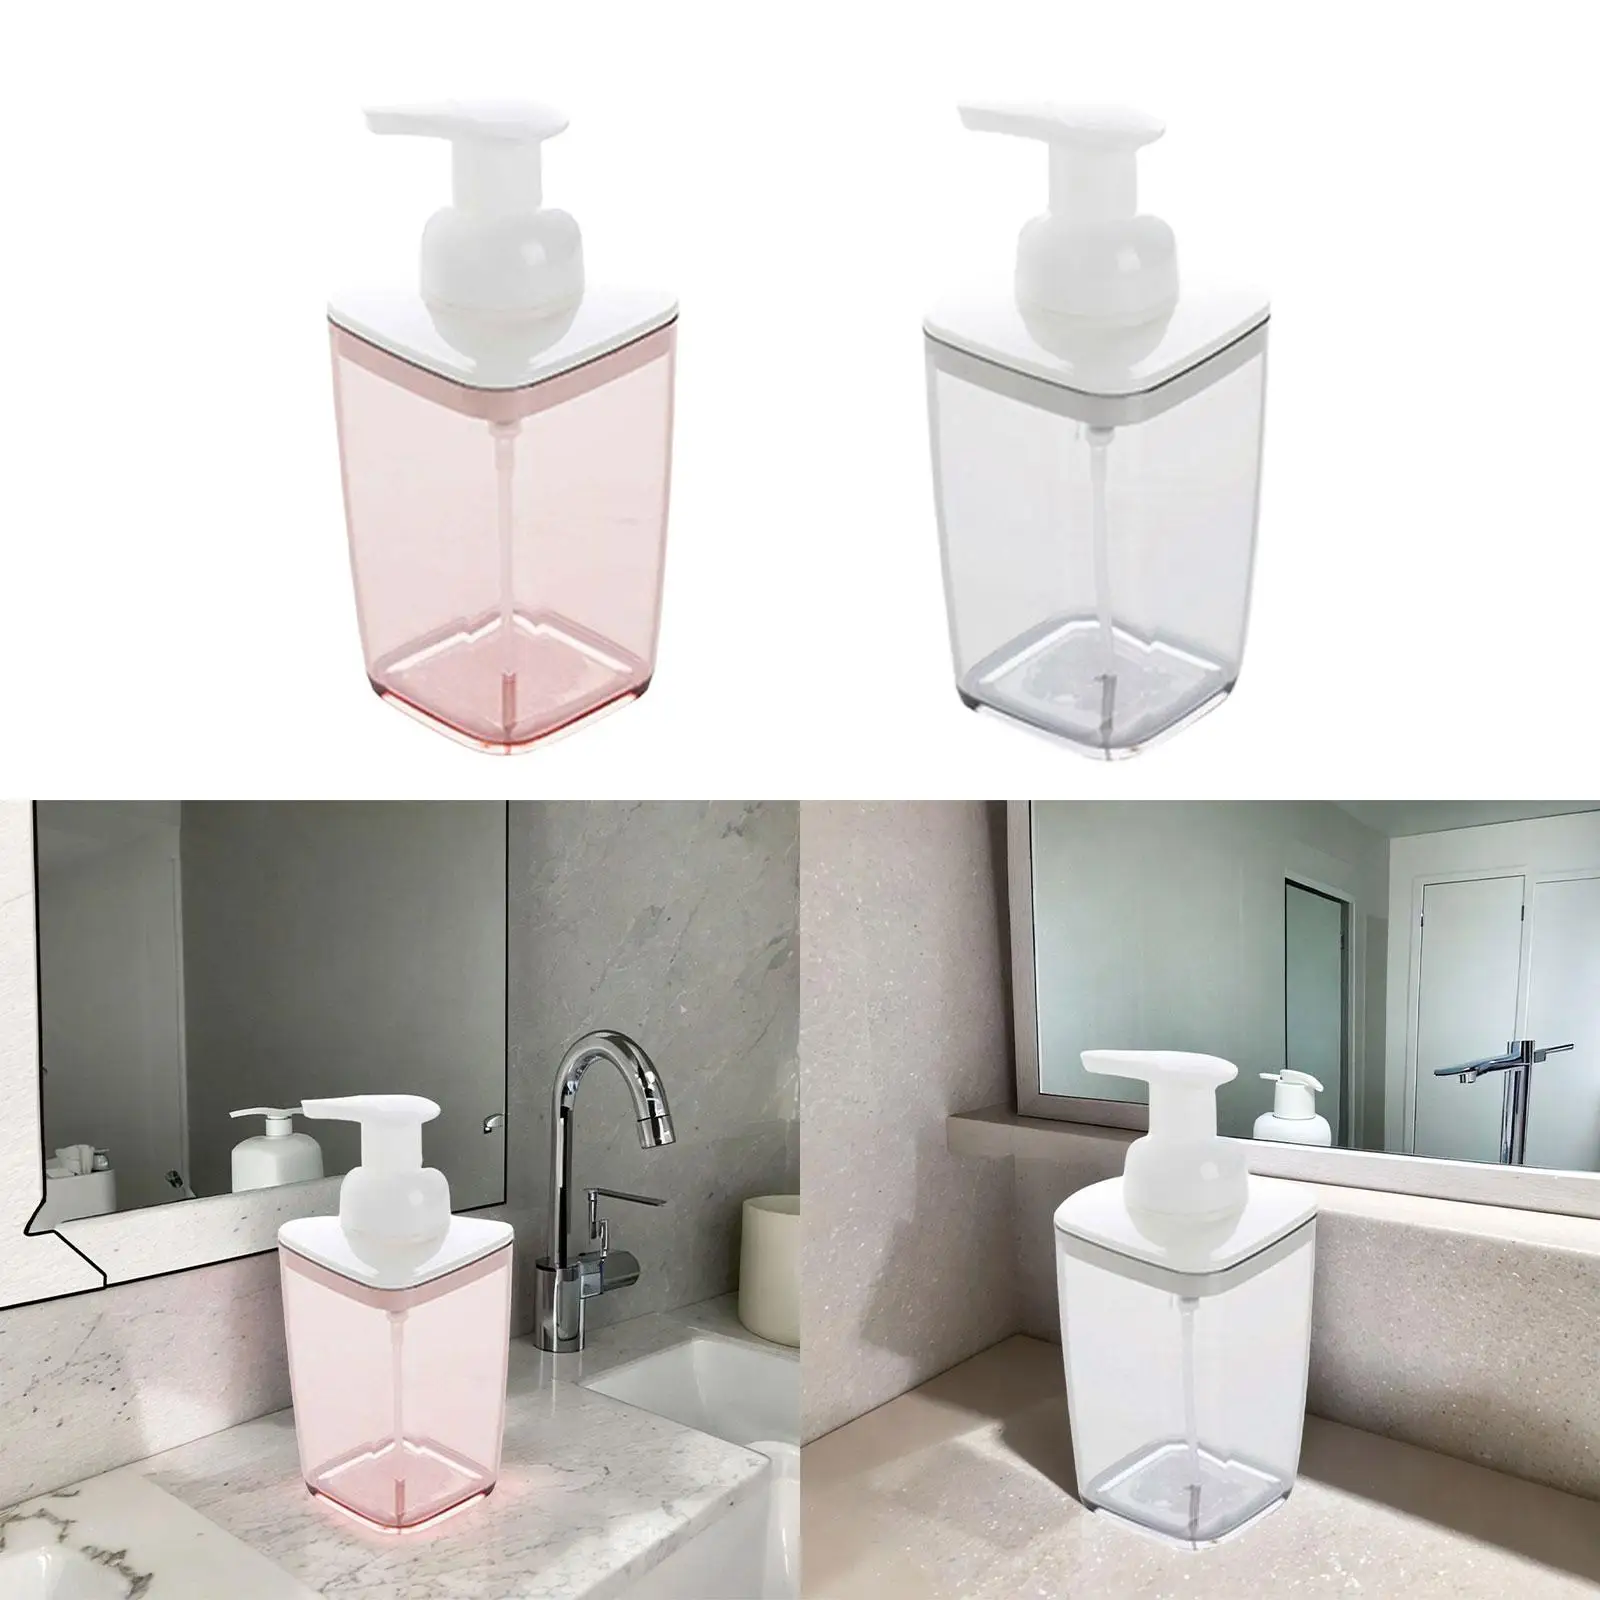 Empty Refillable Pump Bottle Liquid Soap Container Liquid Hand Soap Container for Countertop Shower Room Restroom Vanity